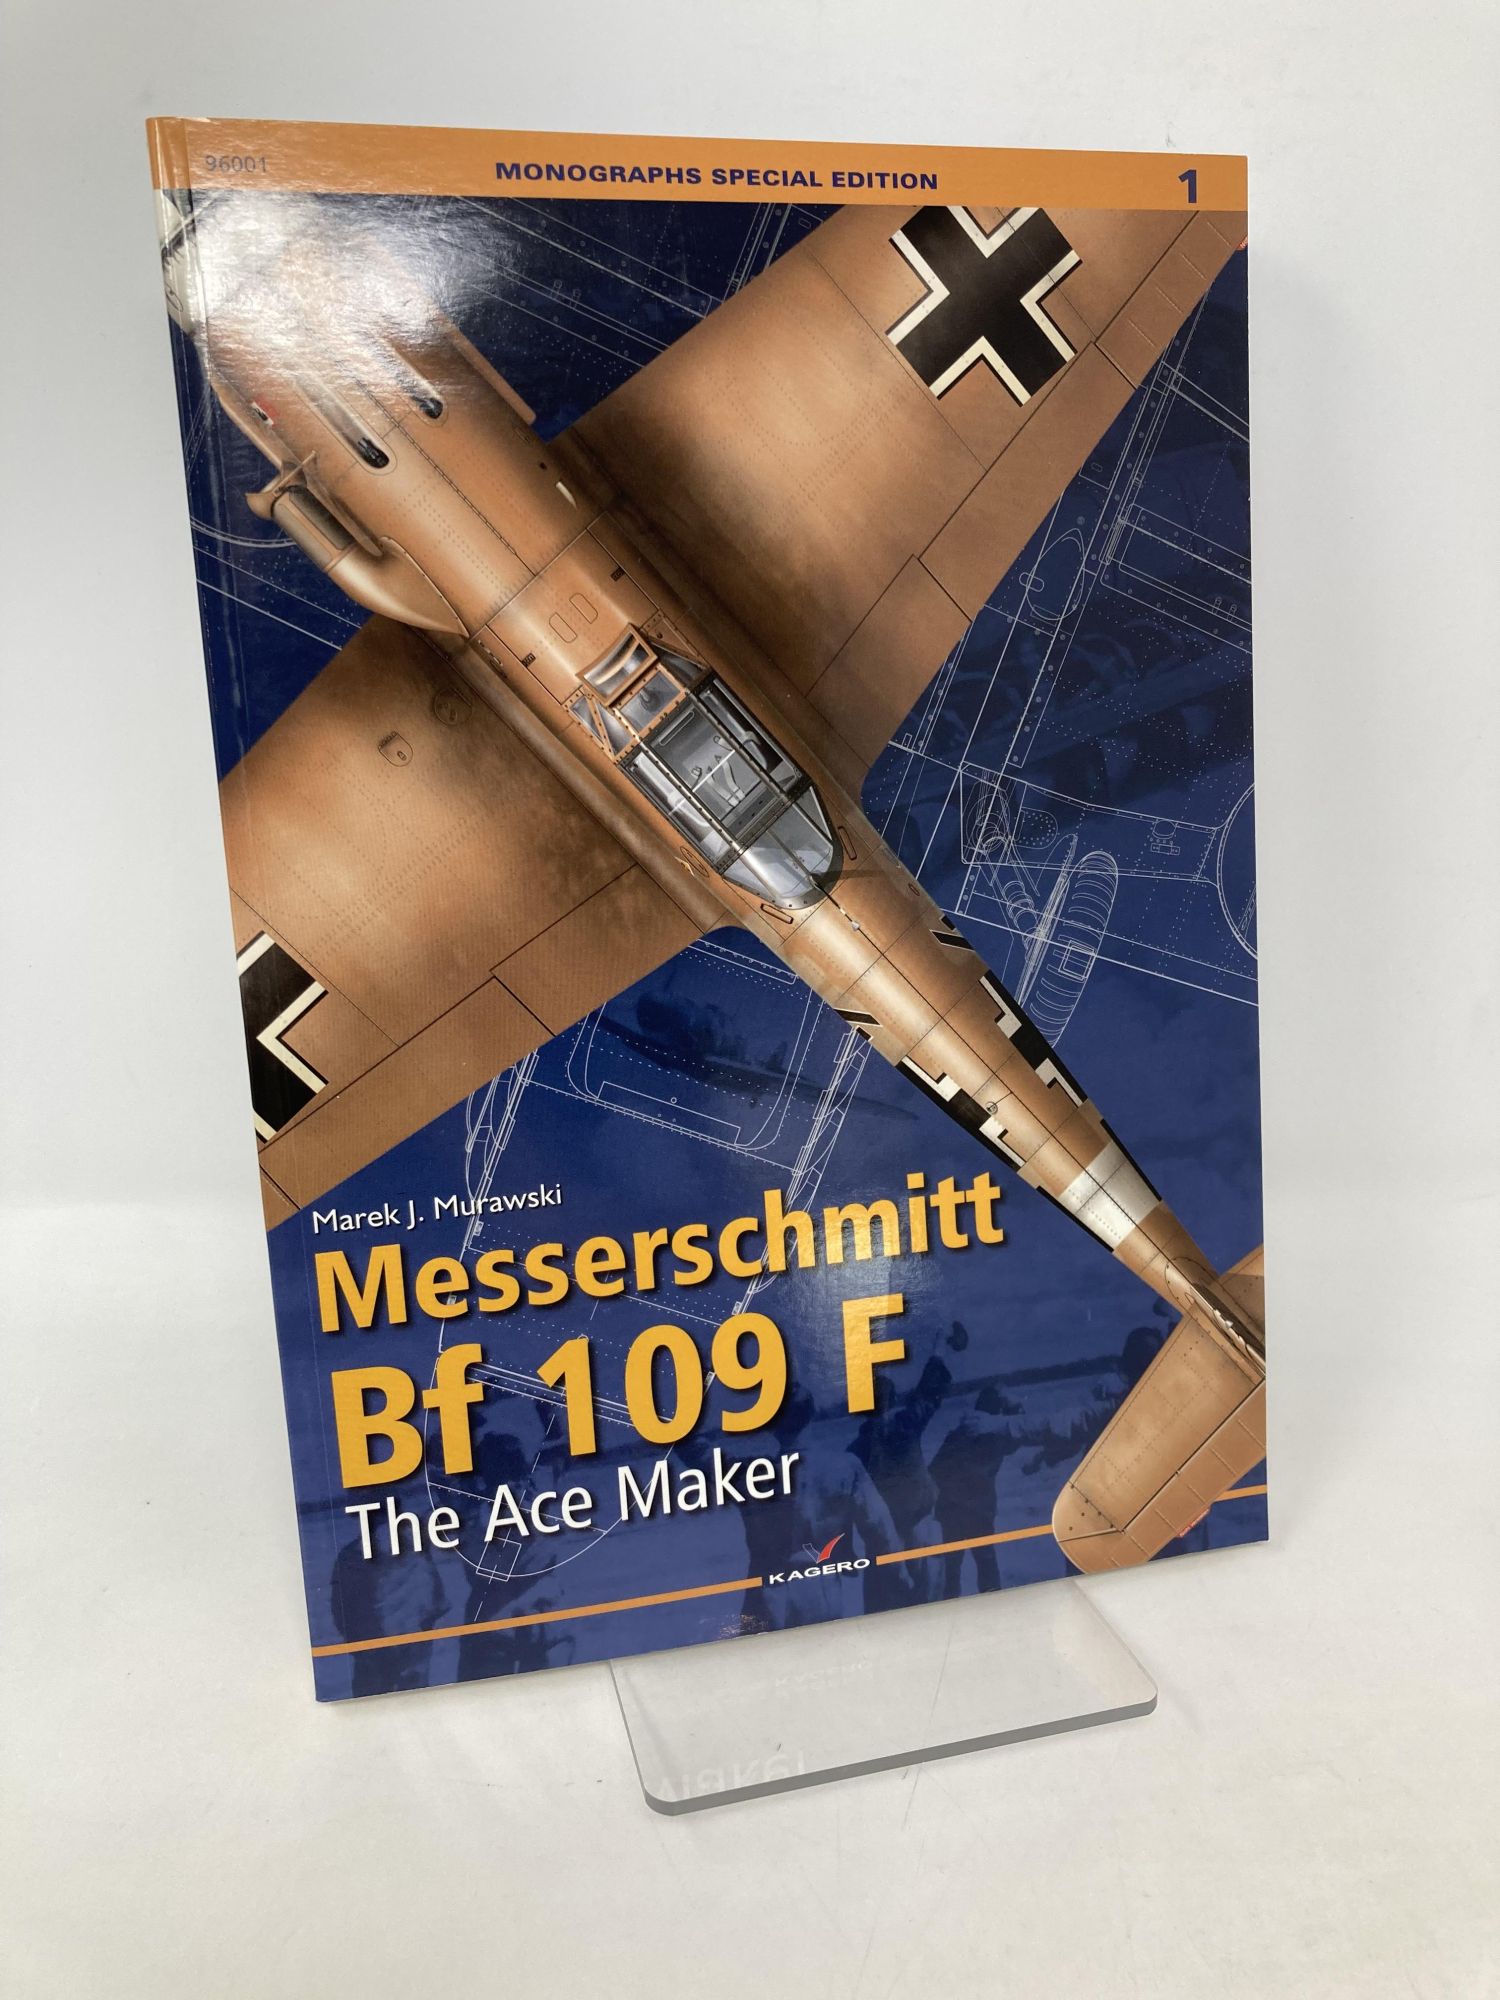 MONOGRAPHS SPECIAL EDITION Messerschmitt